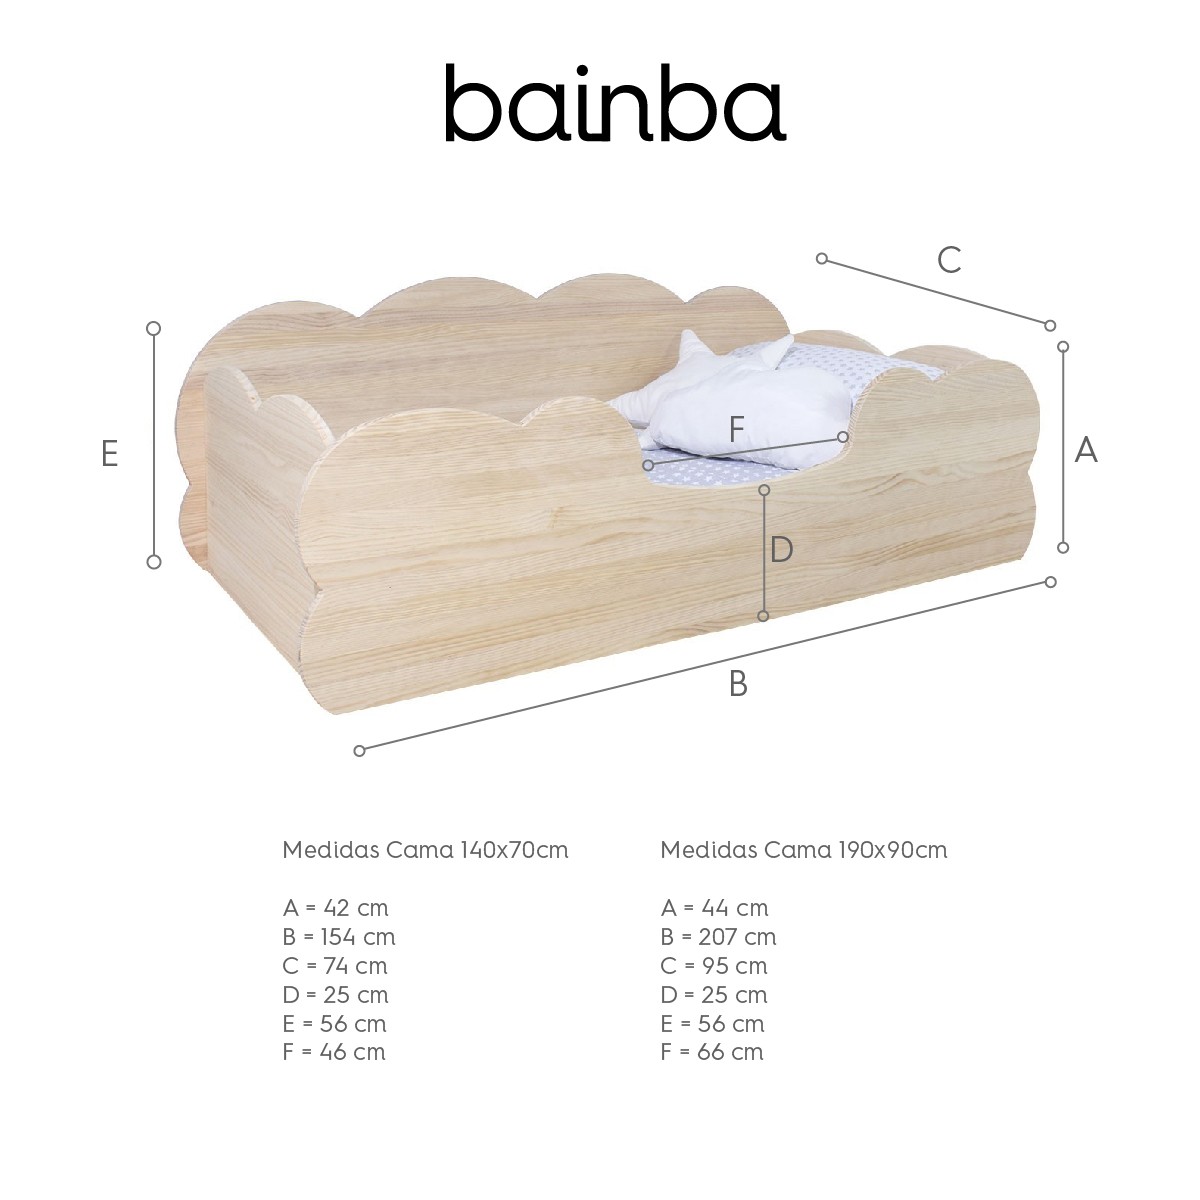 Bainba - 🍂𝓜𝓾𝓮𝓫𝓵𝓮𝓼 𝓮𝓷 𝓶𝓪𝓭𝓮𝓻𝓪 𝓝𝓪𝓽𝓾𝓻𝓪𝓵🍂 👉Cama  Montessori Nube ( Disponible en dos medidas) Cama de baja altura para que  los peques de la casa puedan subir y bajar ellos solitos .